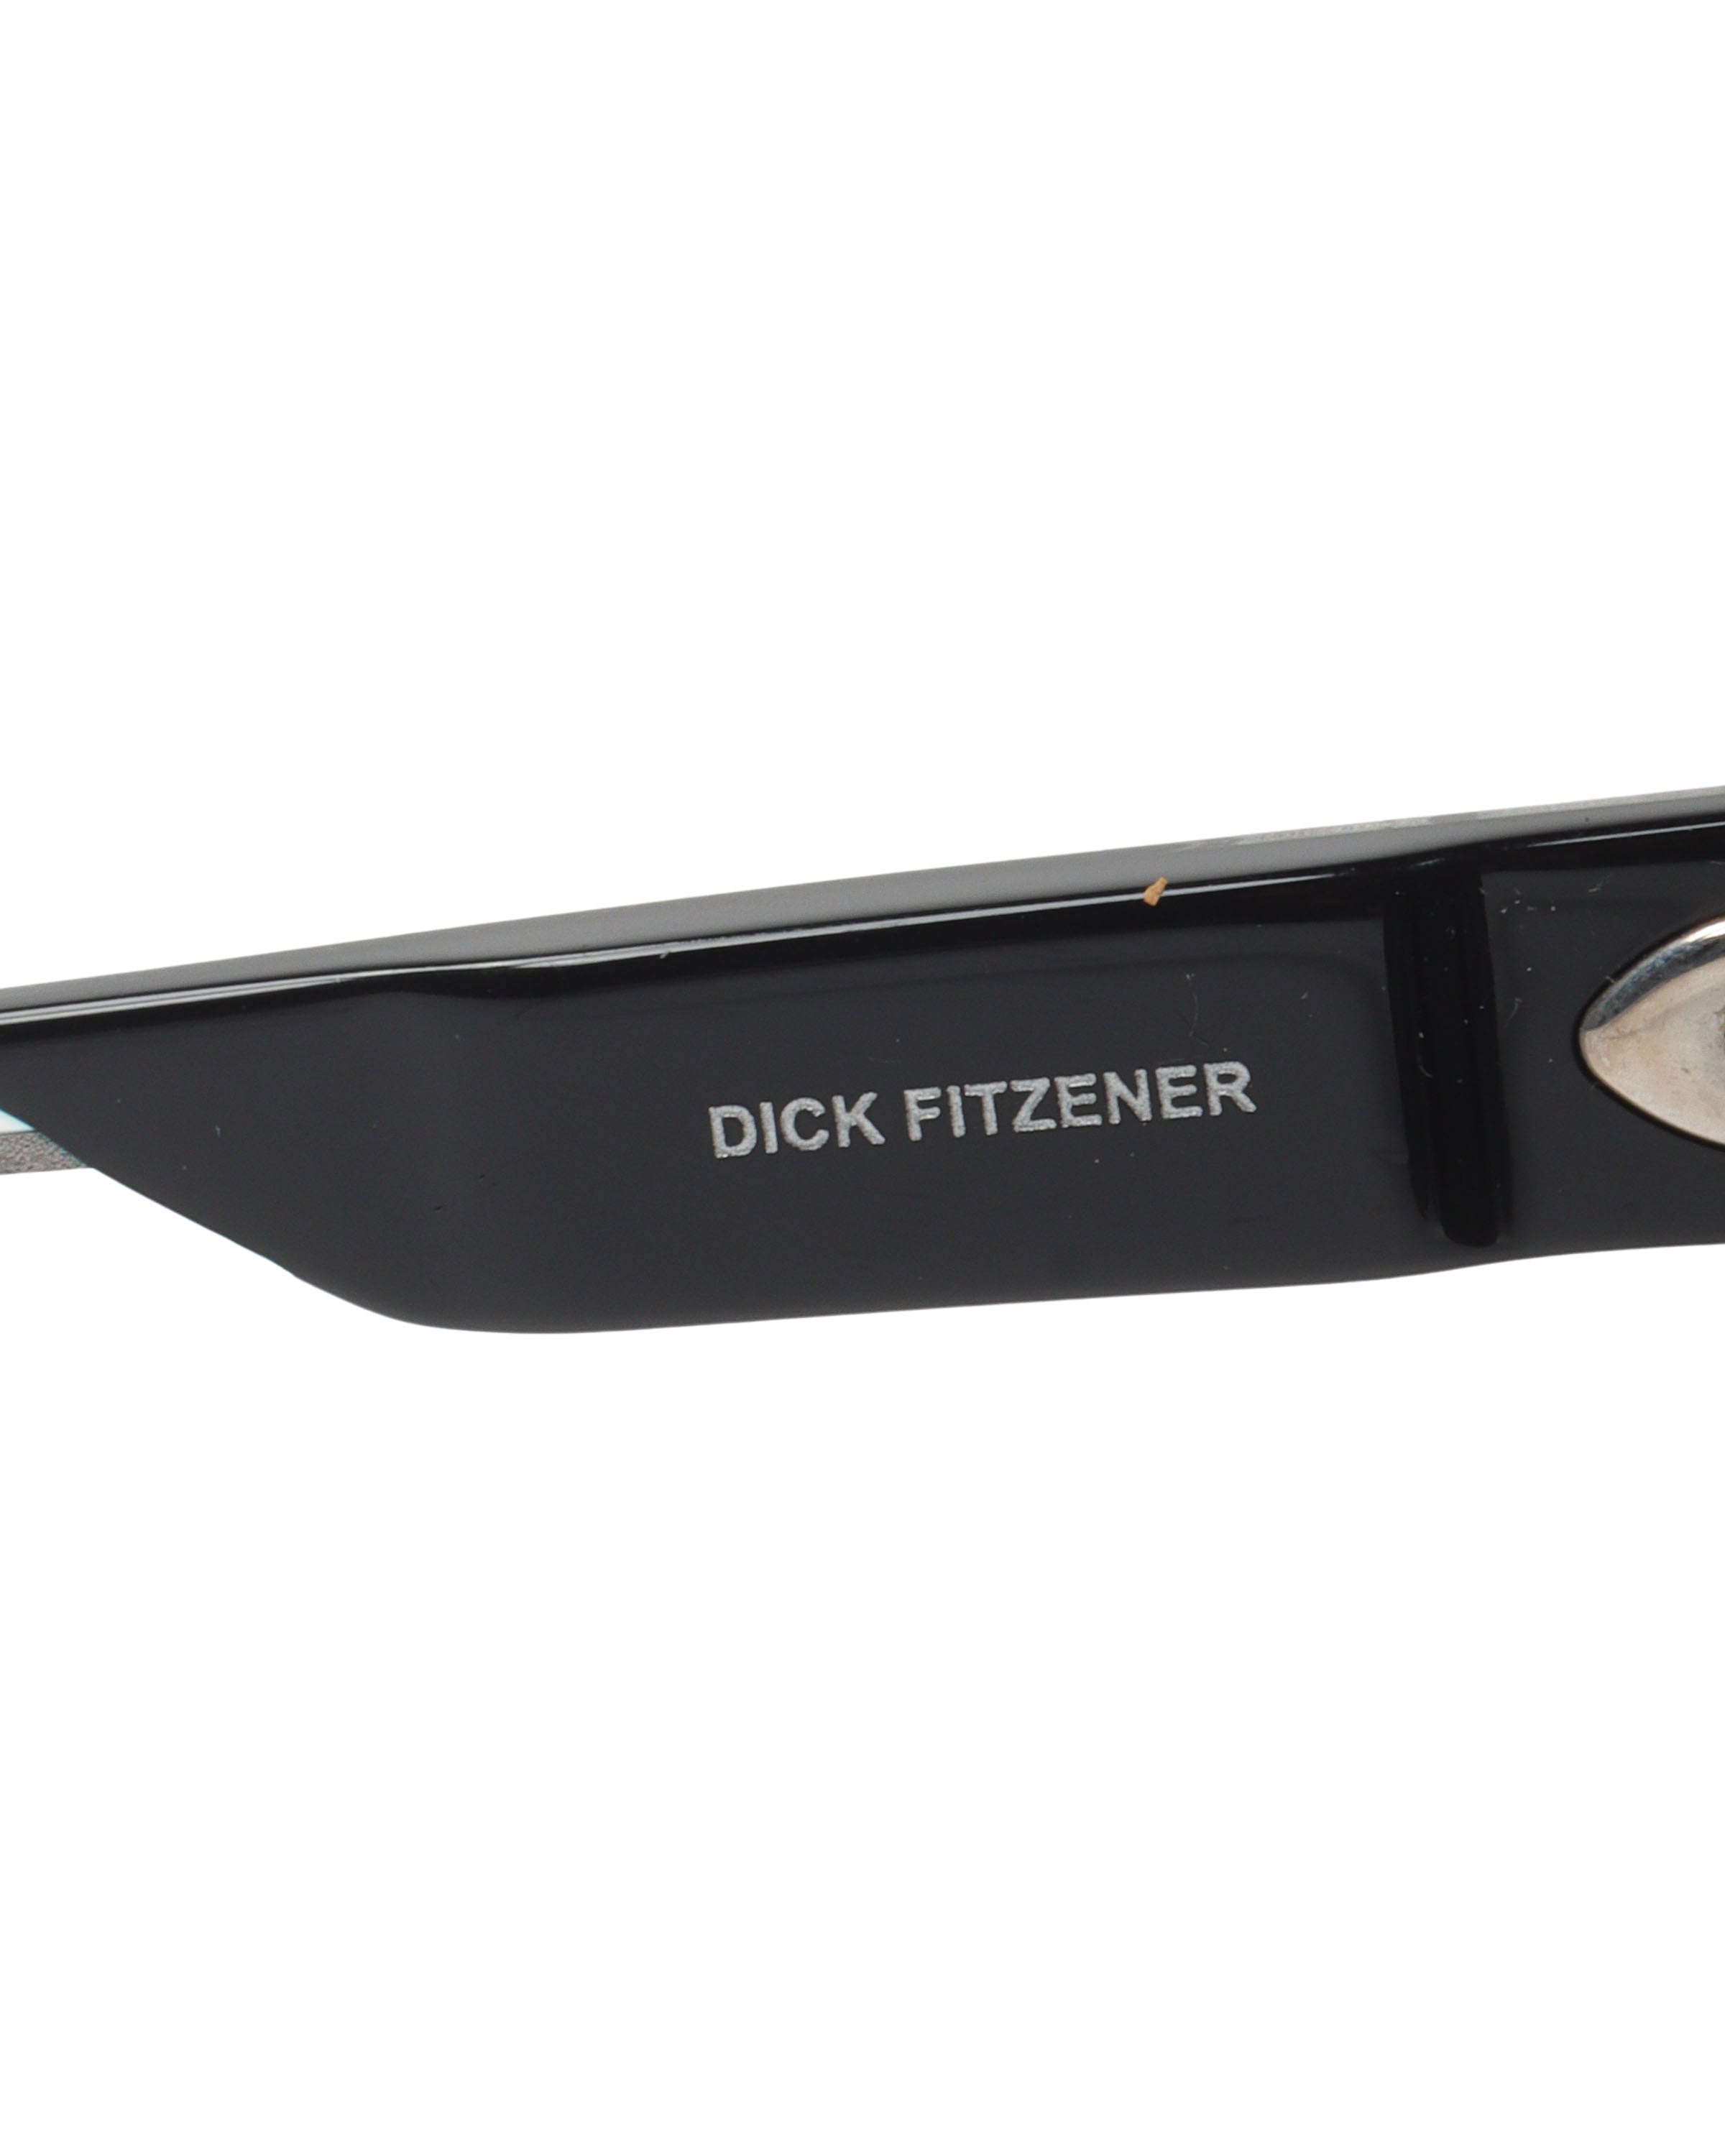 Dick Fitzener Sunglasses